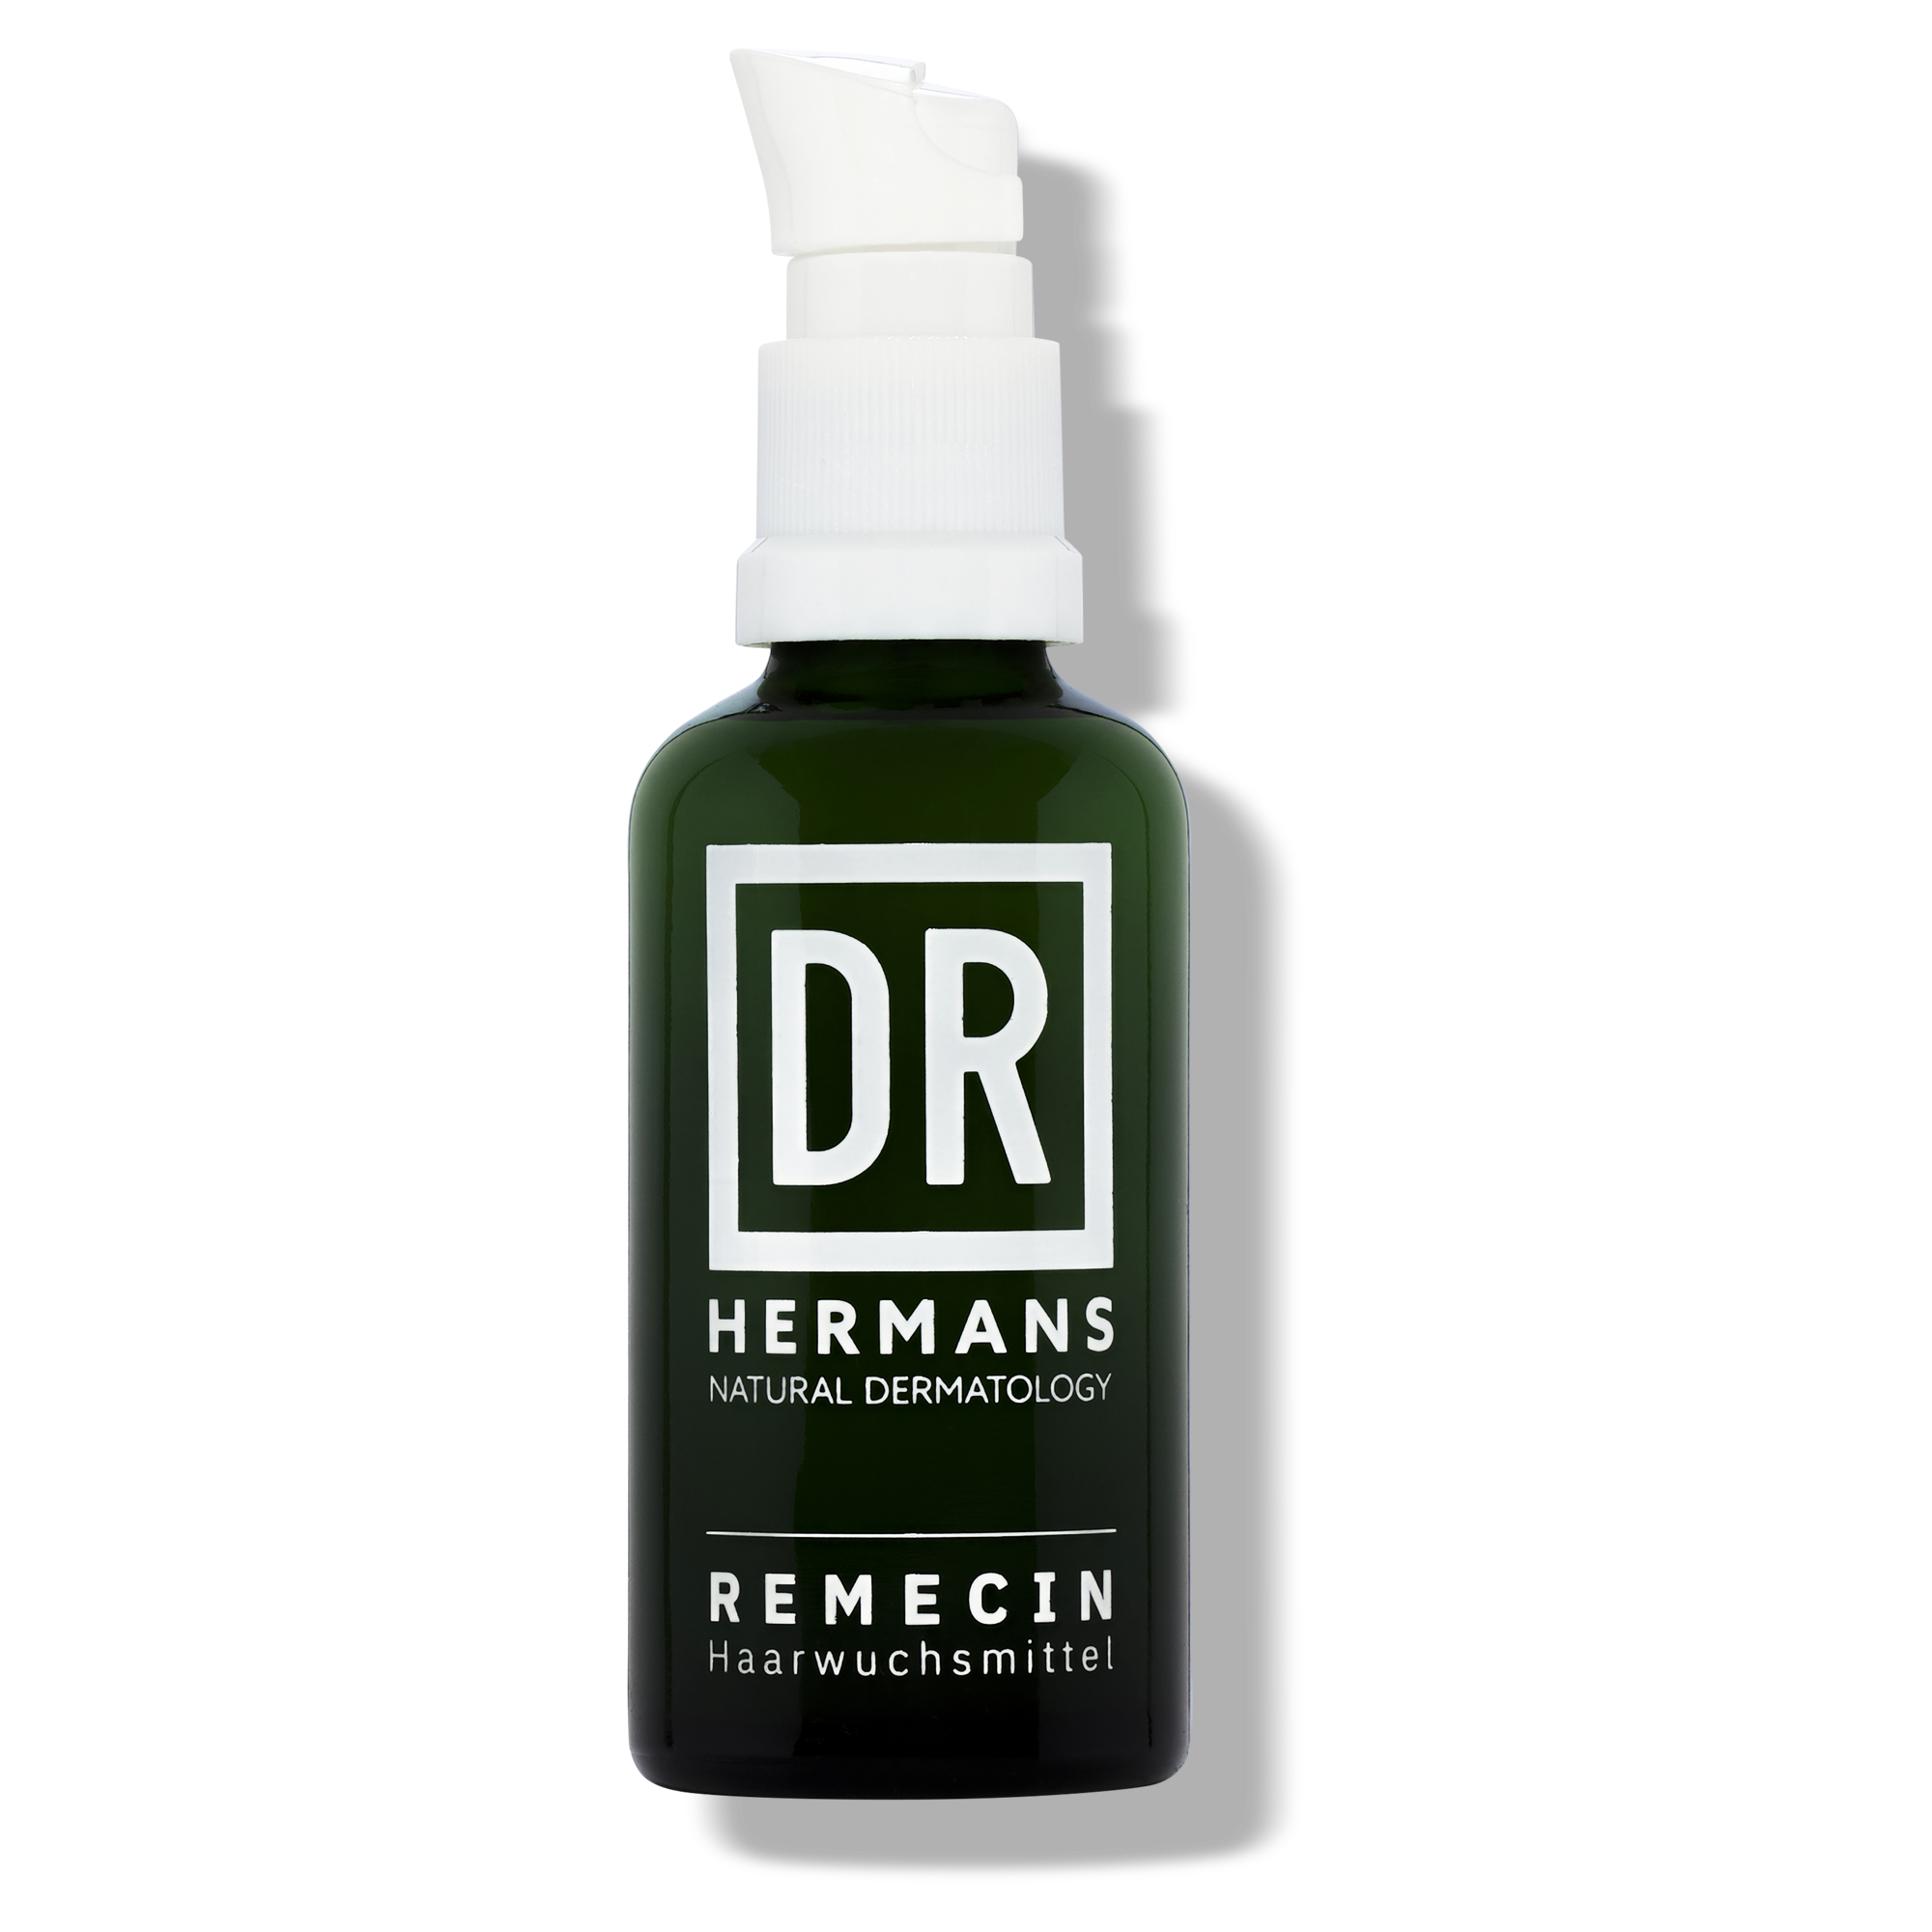 DR HERMANS REMECIN Haarwuchsmittel Lösung